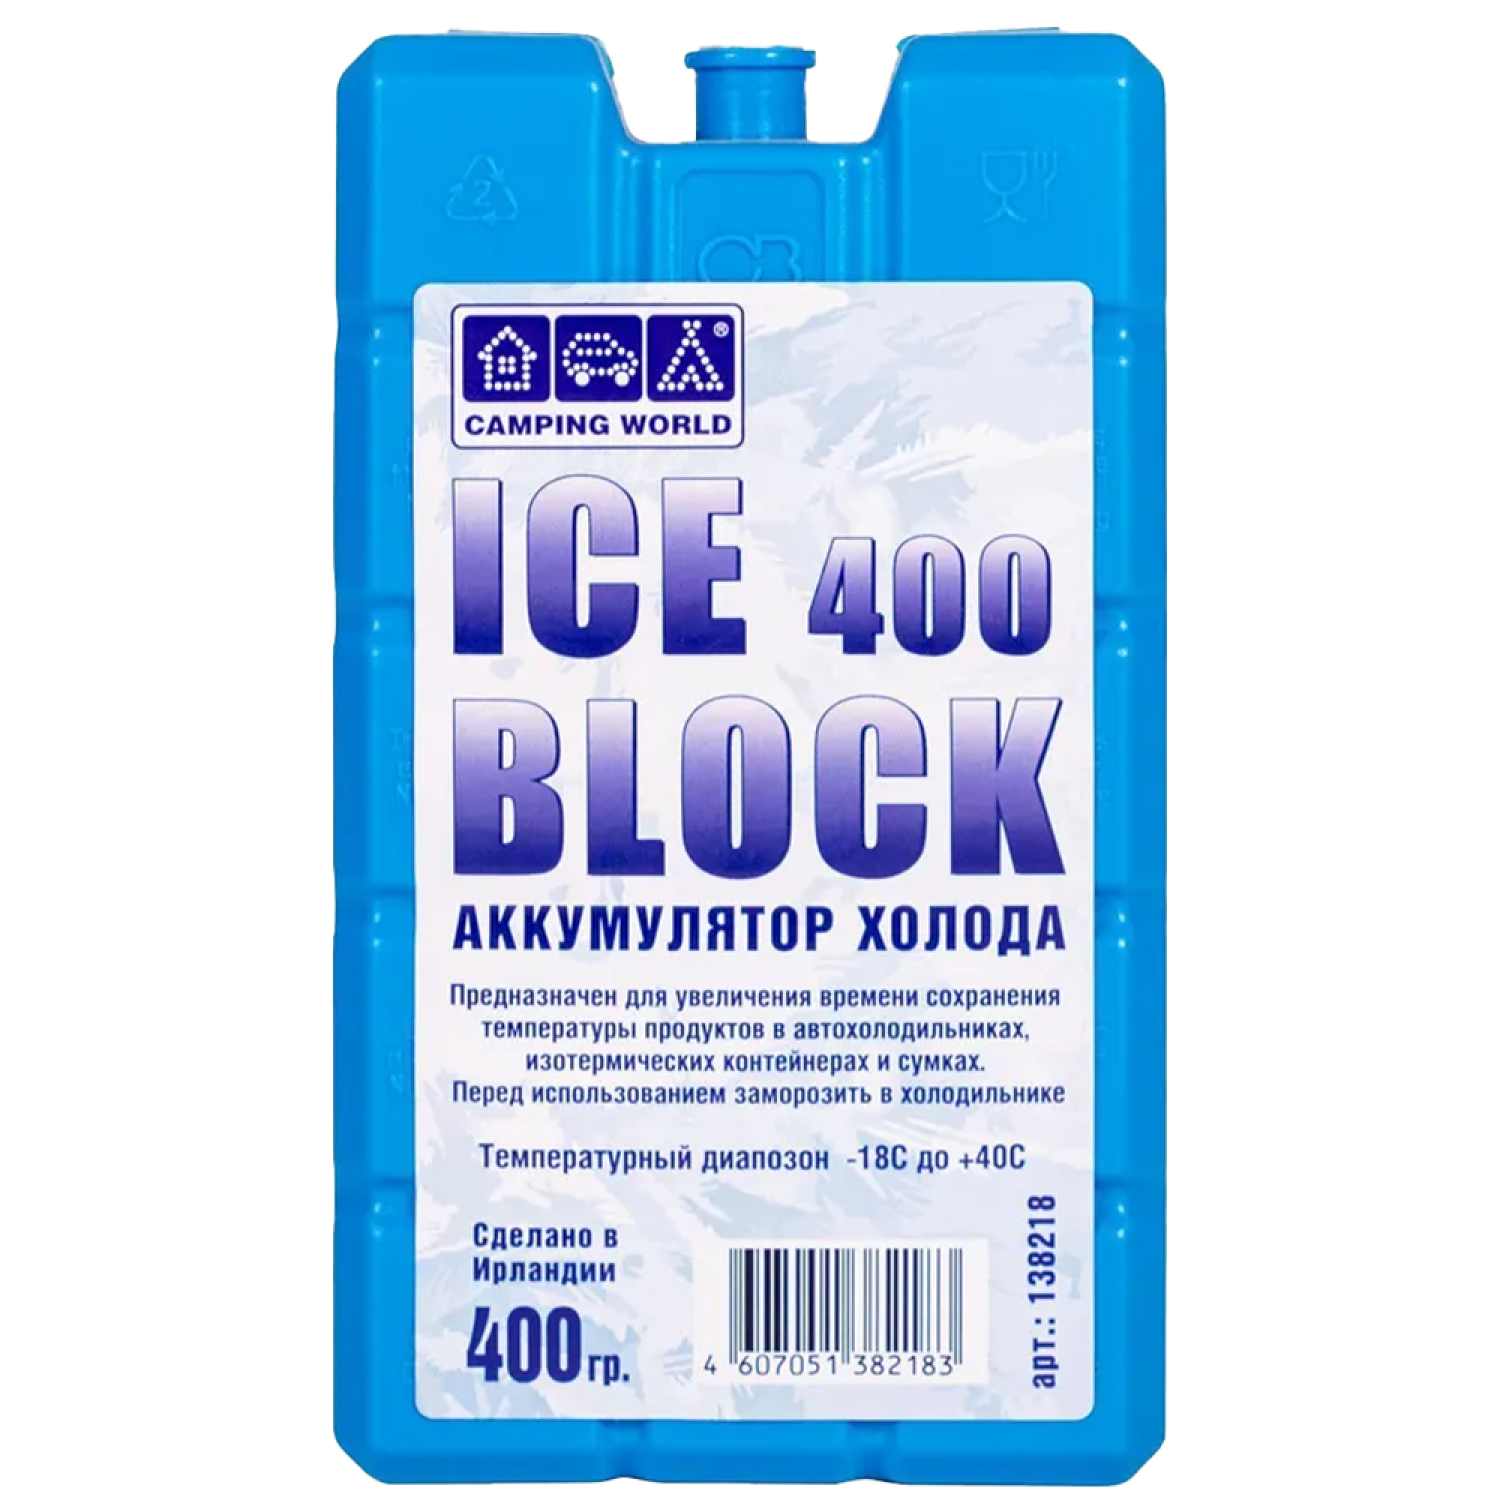 Аккумулятор холода Camping World Iceblock 400